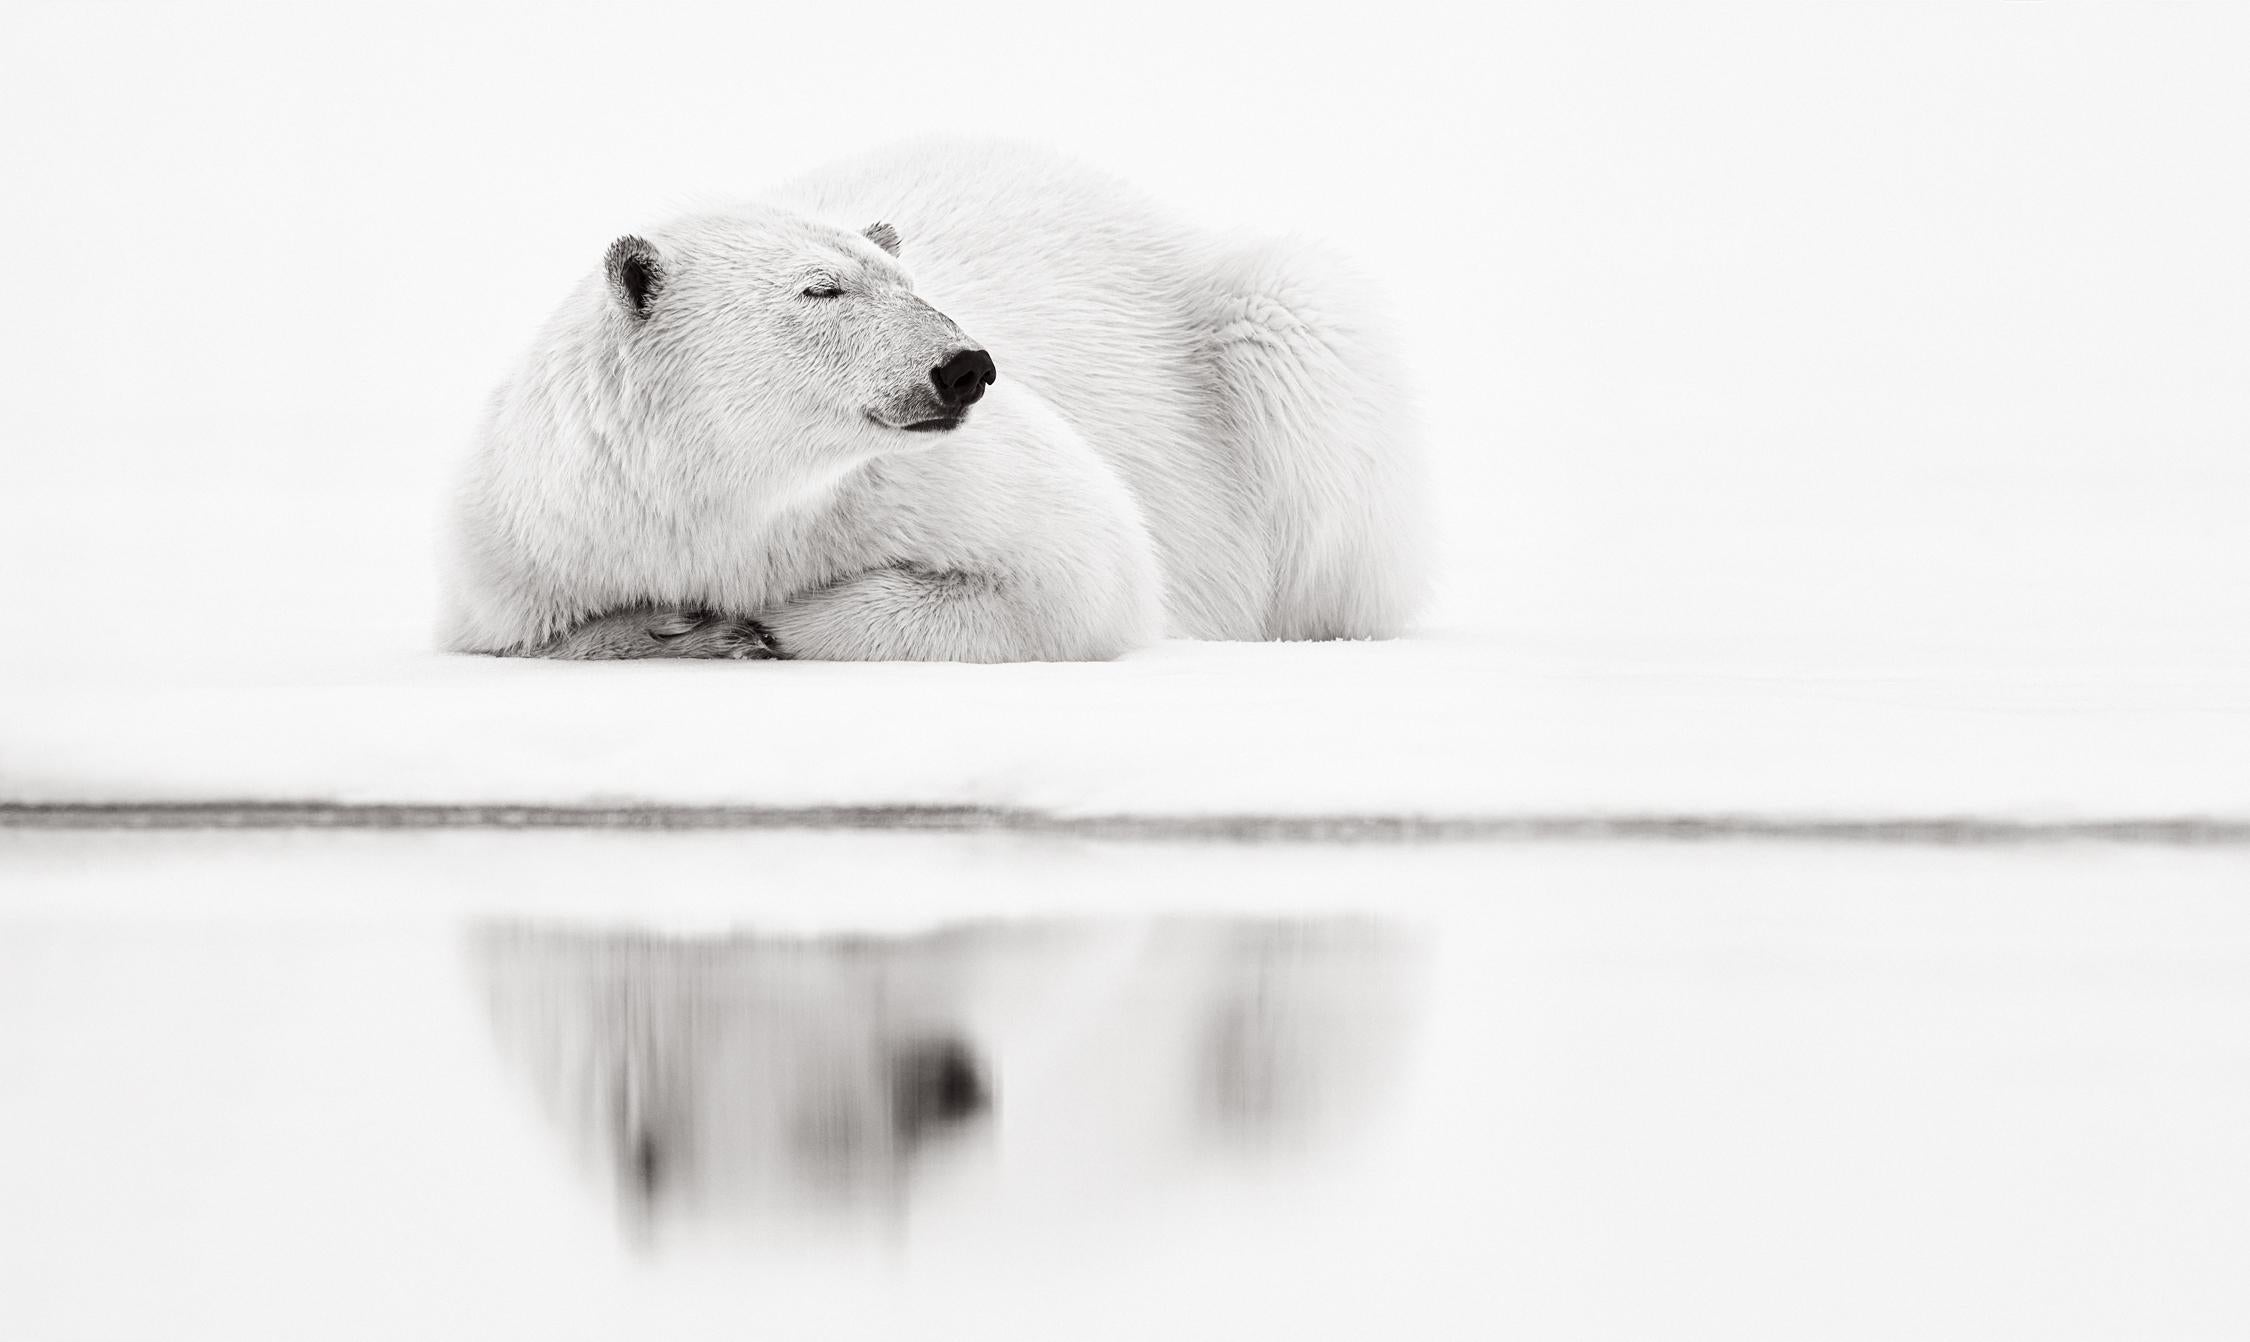 Drew Doggett Black and White Photograph – Polarbär auf Wasserkante ruht, Schwarz-Weiß-Fotografie